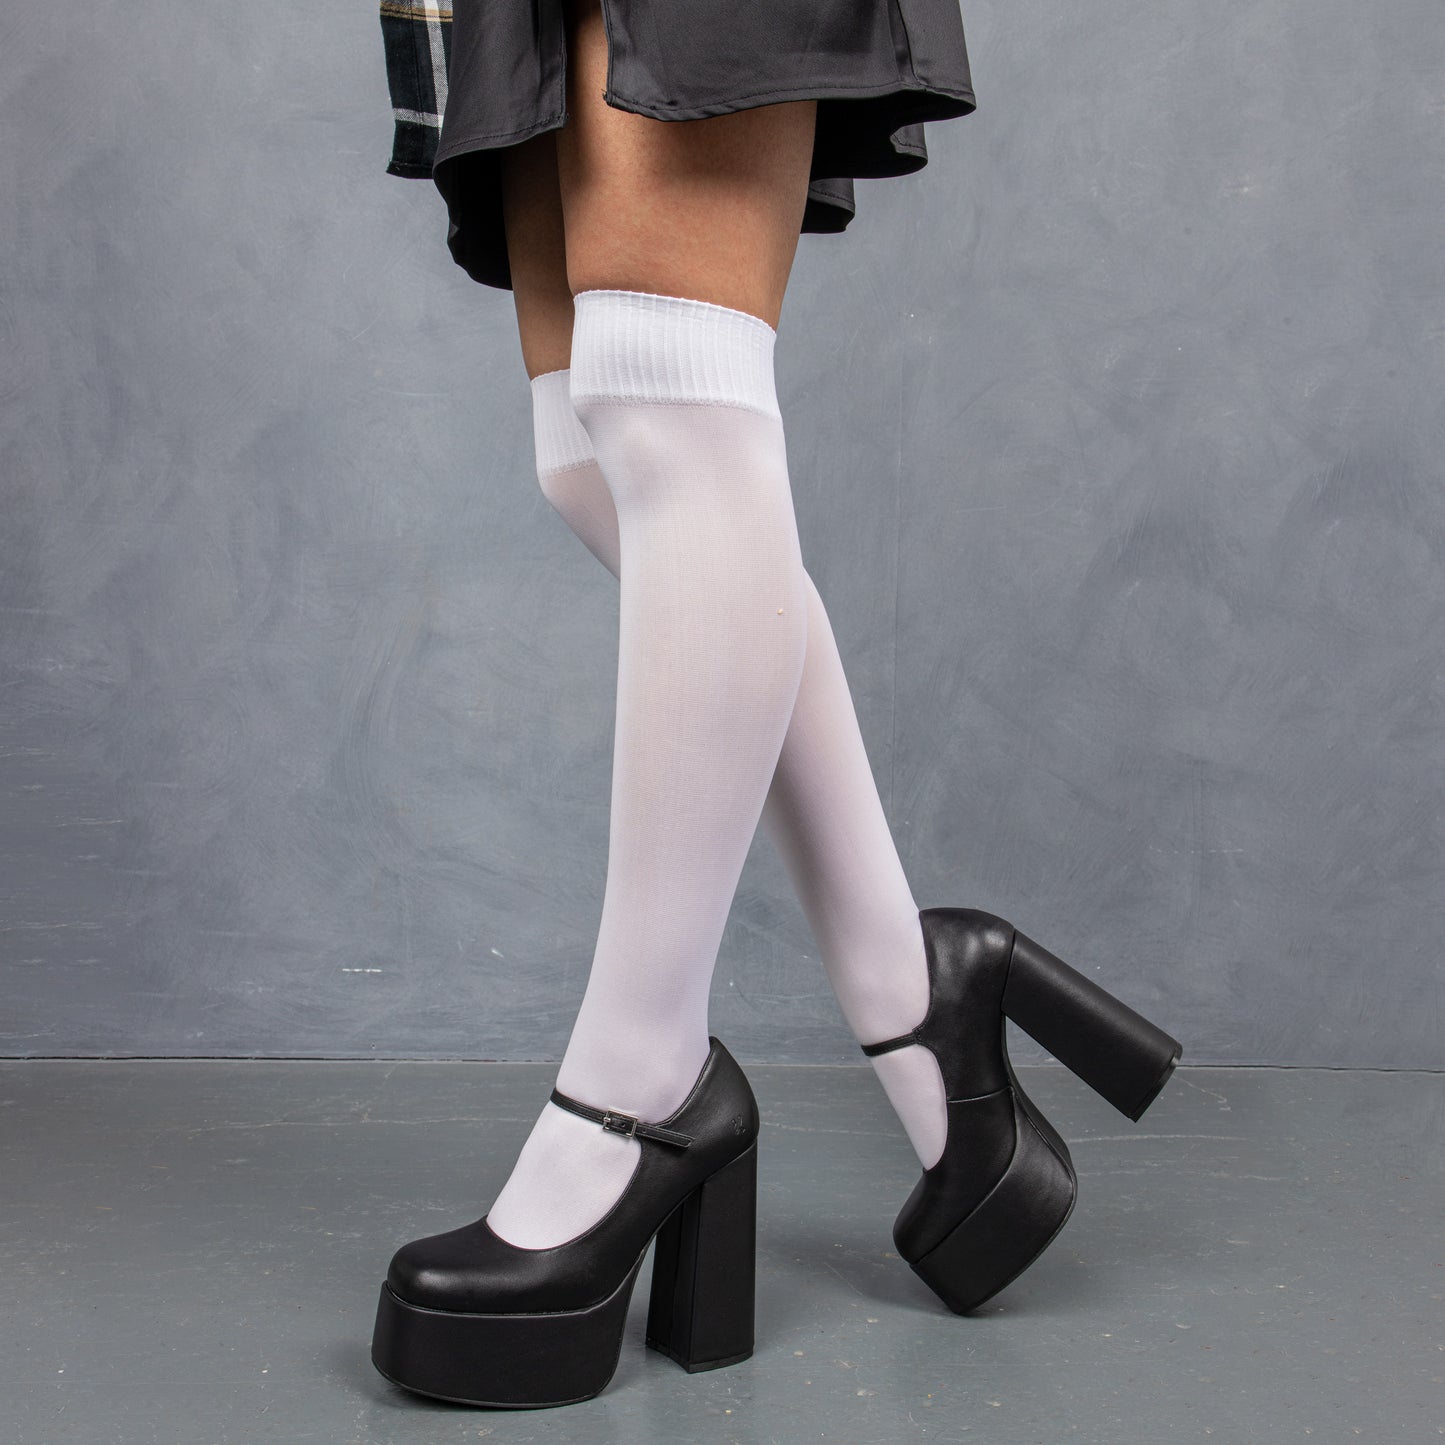 Darkbloom Black Platform Heels - Shoes - KOI Footwear - Black - Model Left View